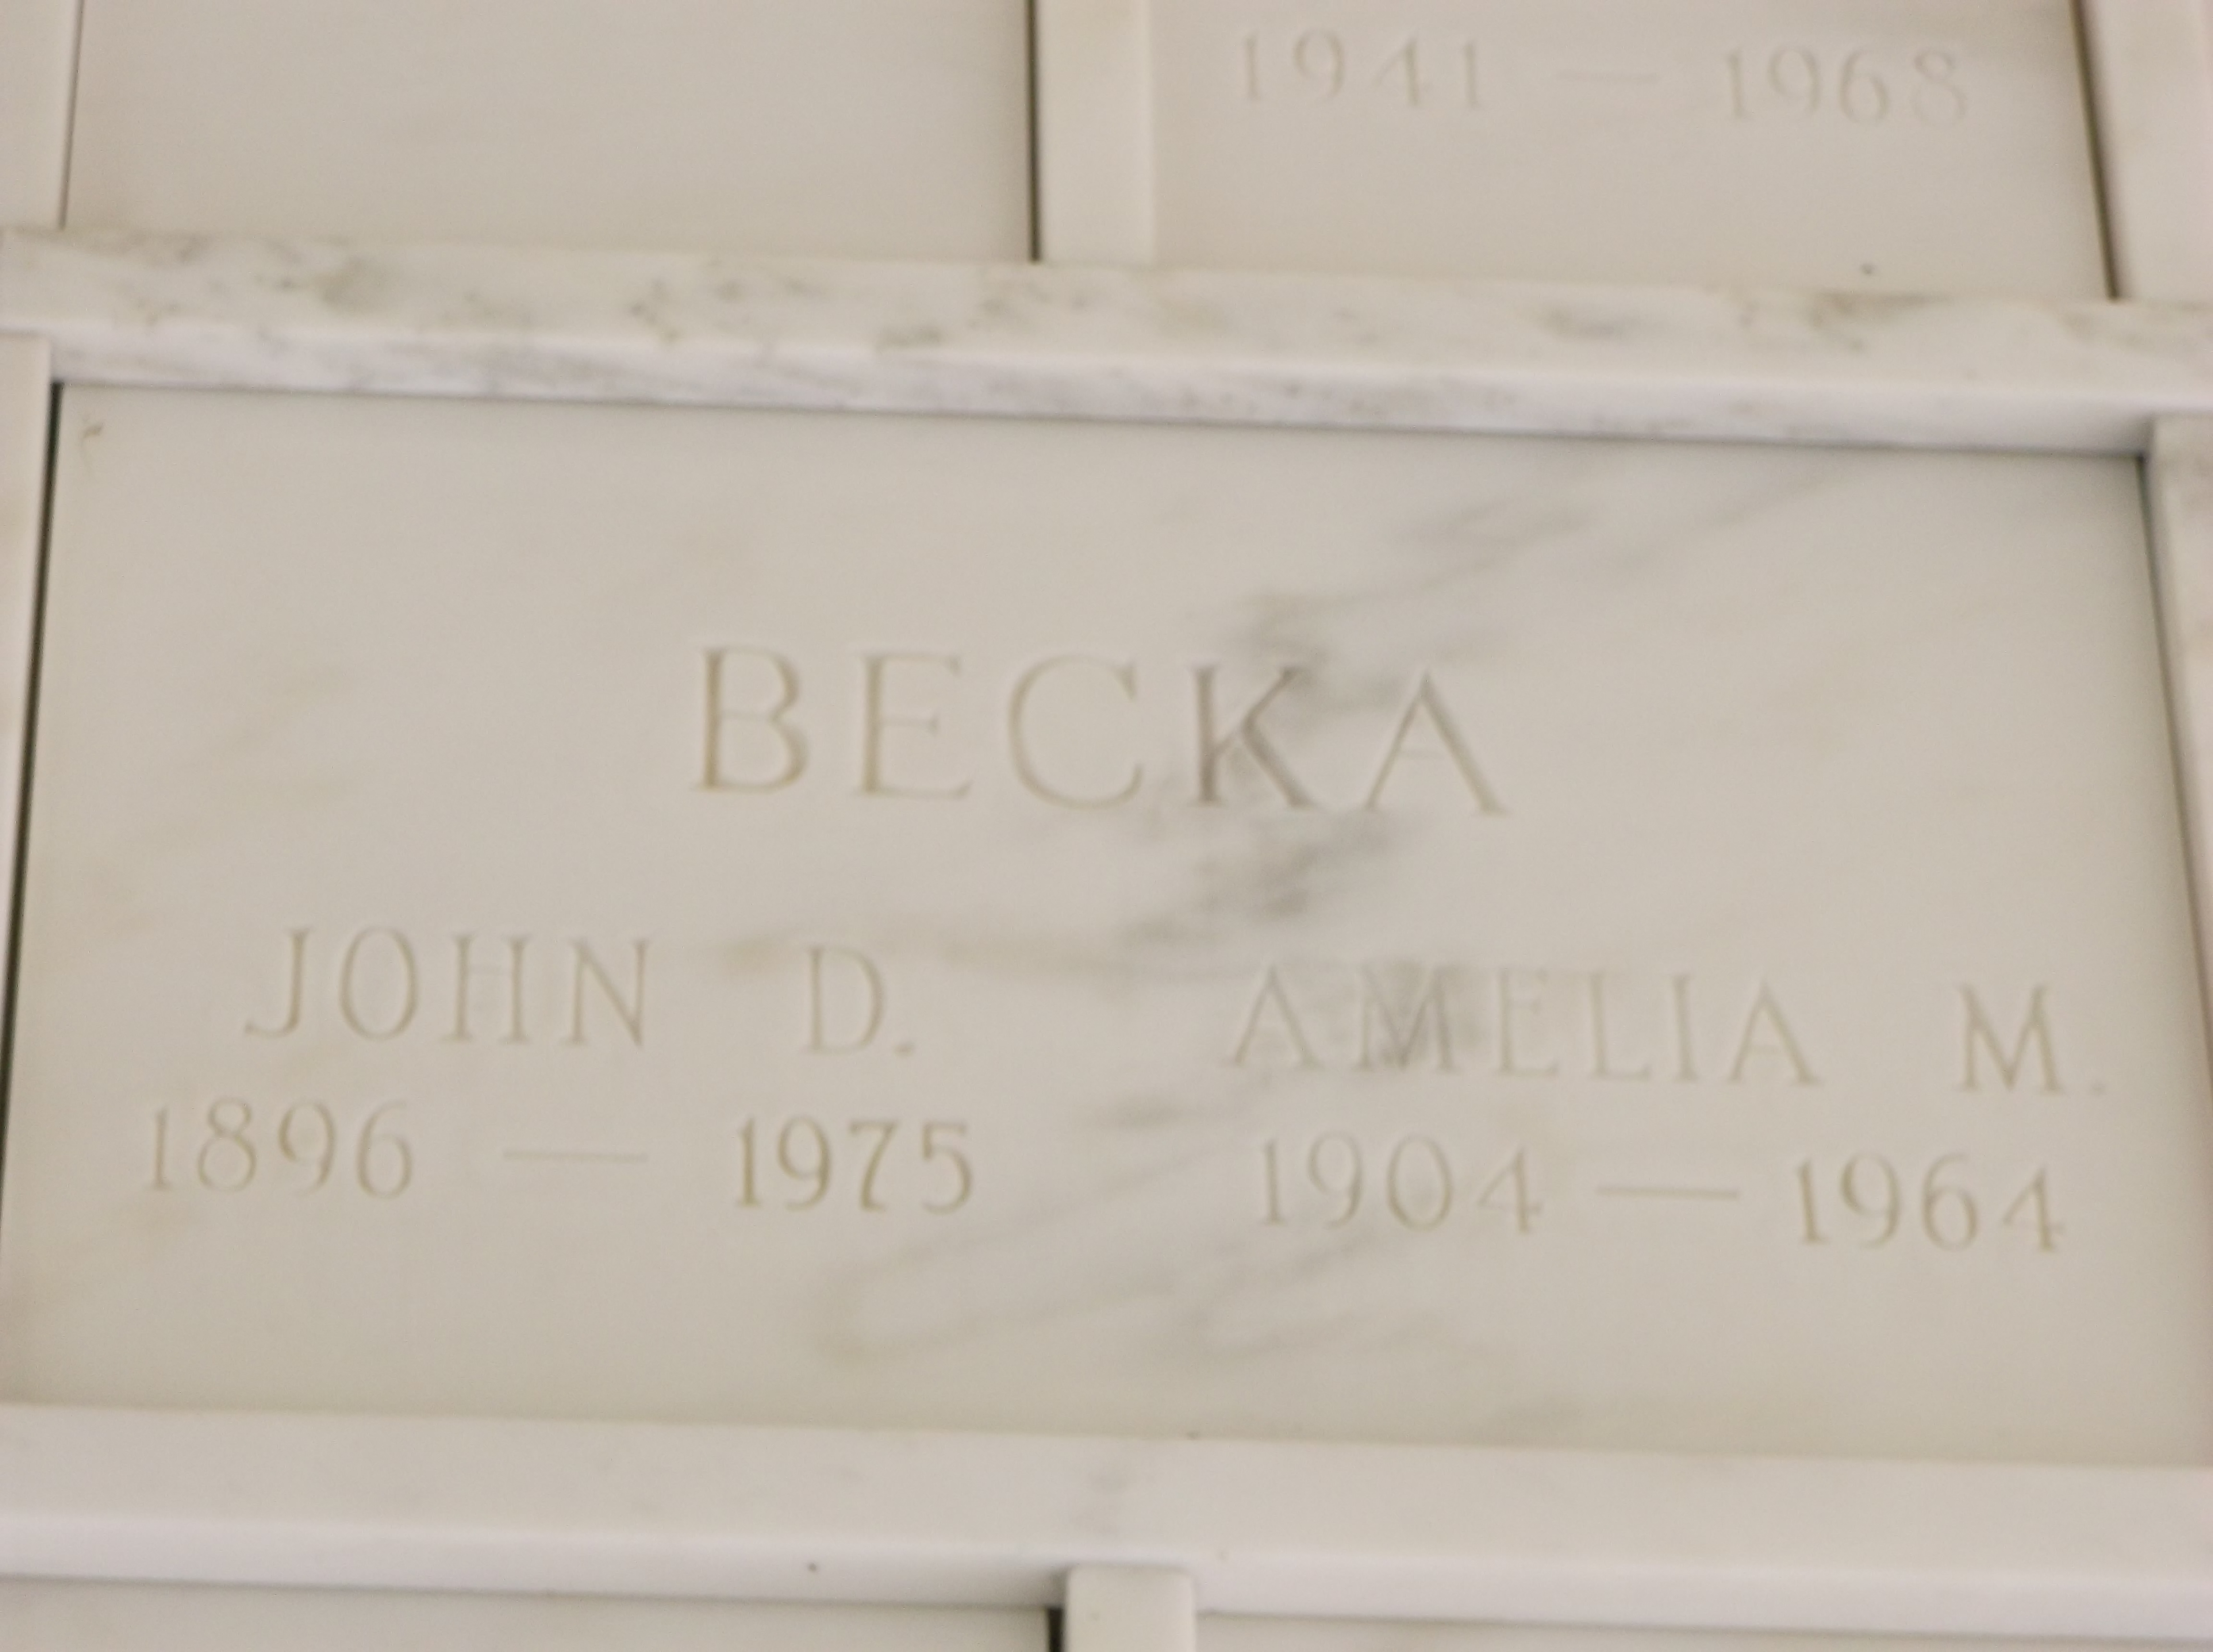 Amelia M Becka